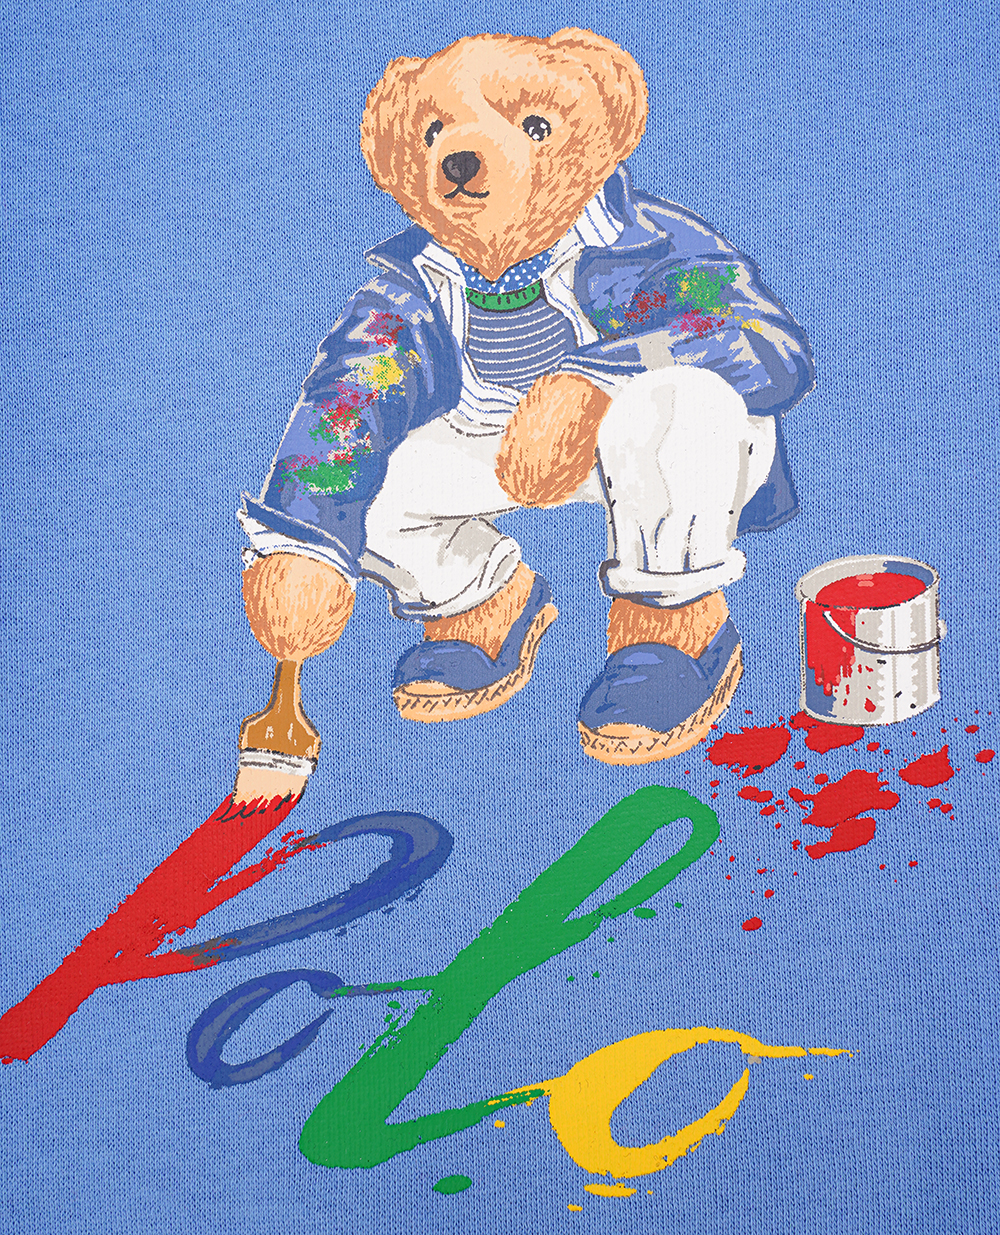 Детский свитшот Polo Bear Polo Ralph Lauren Kids 322919722004, синий цвет • Купить в интернет-магазине Kameron